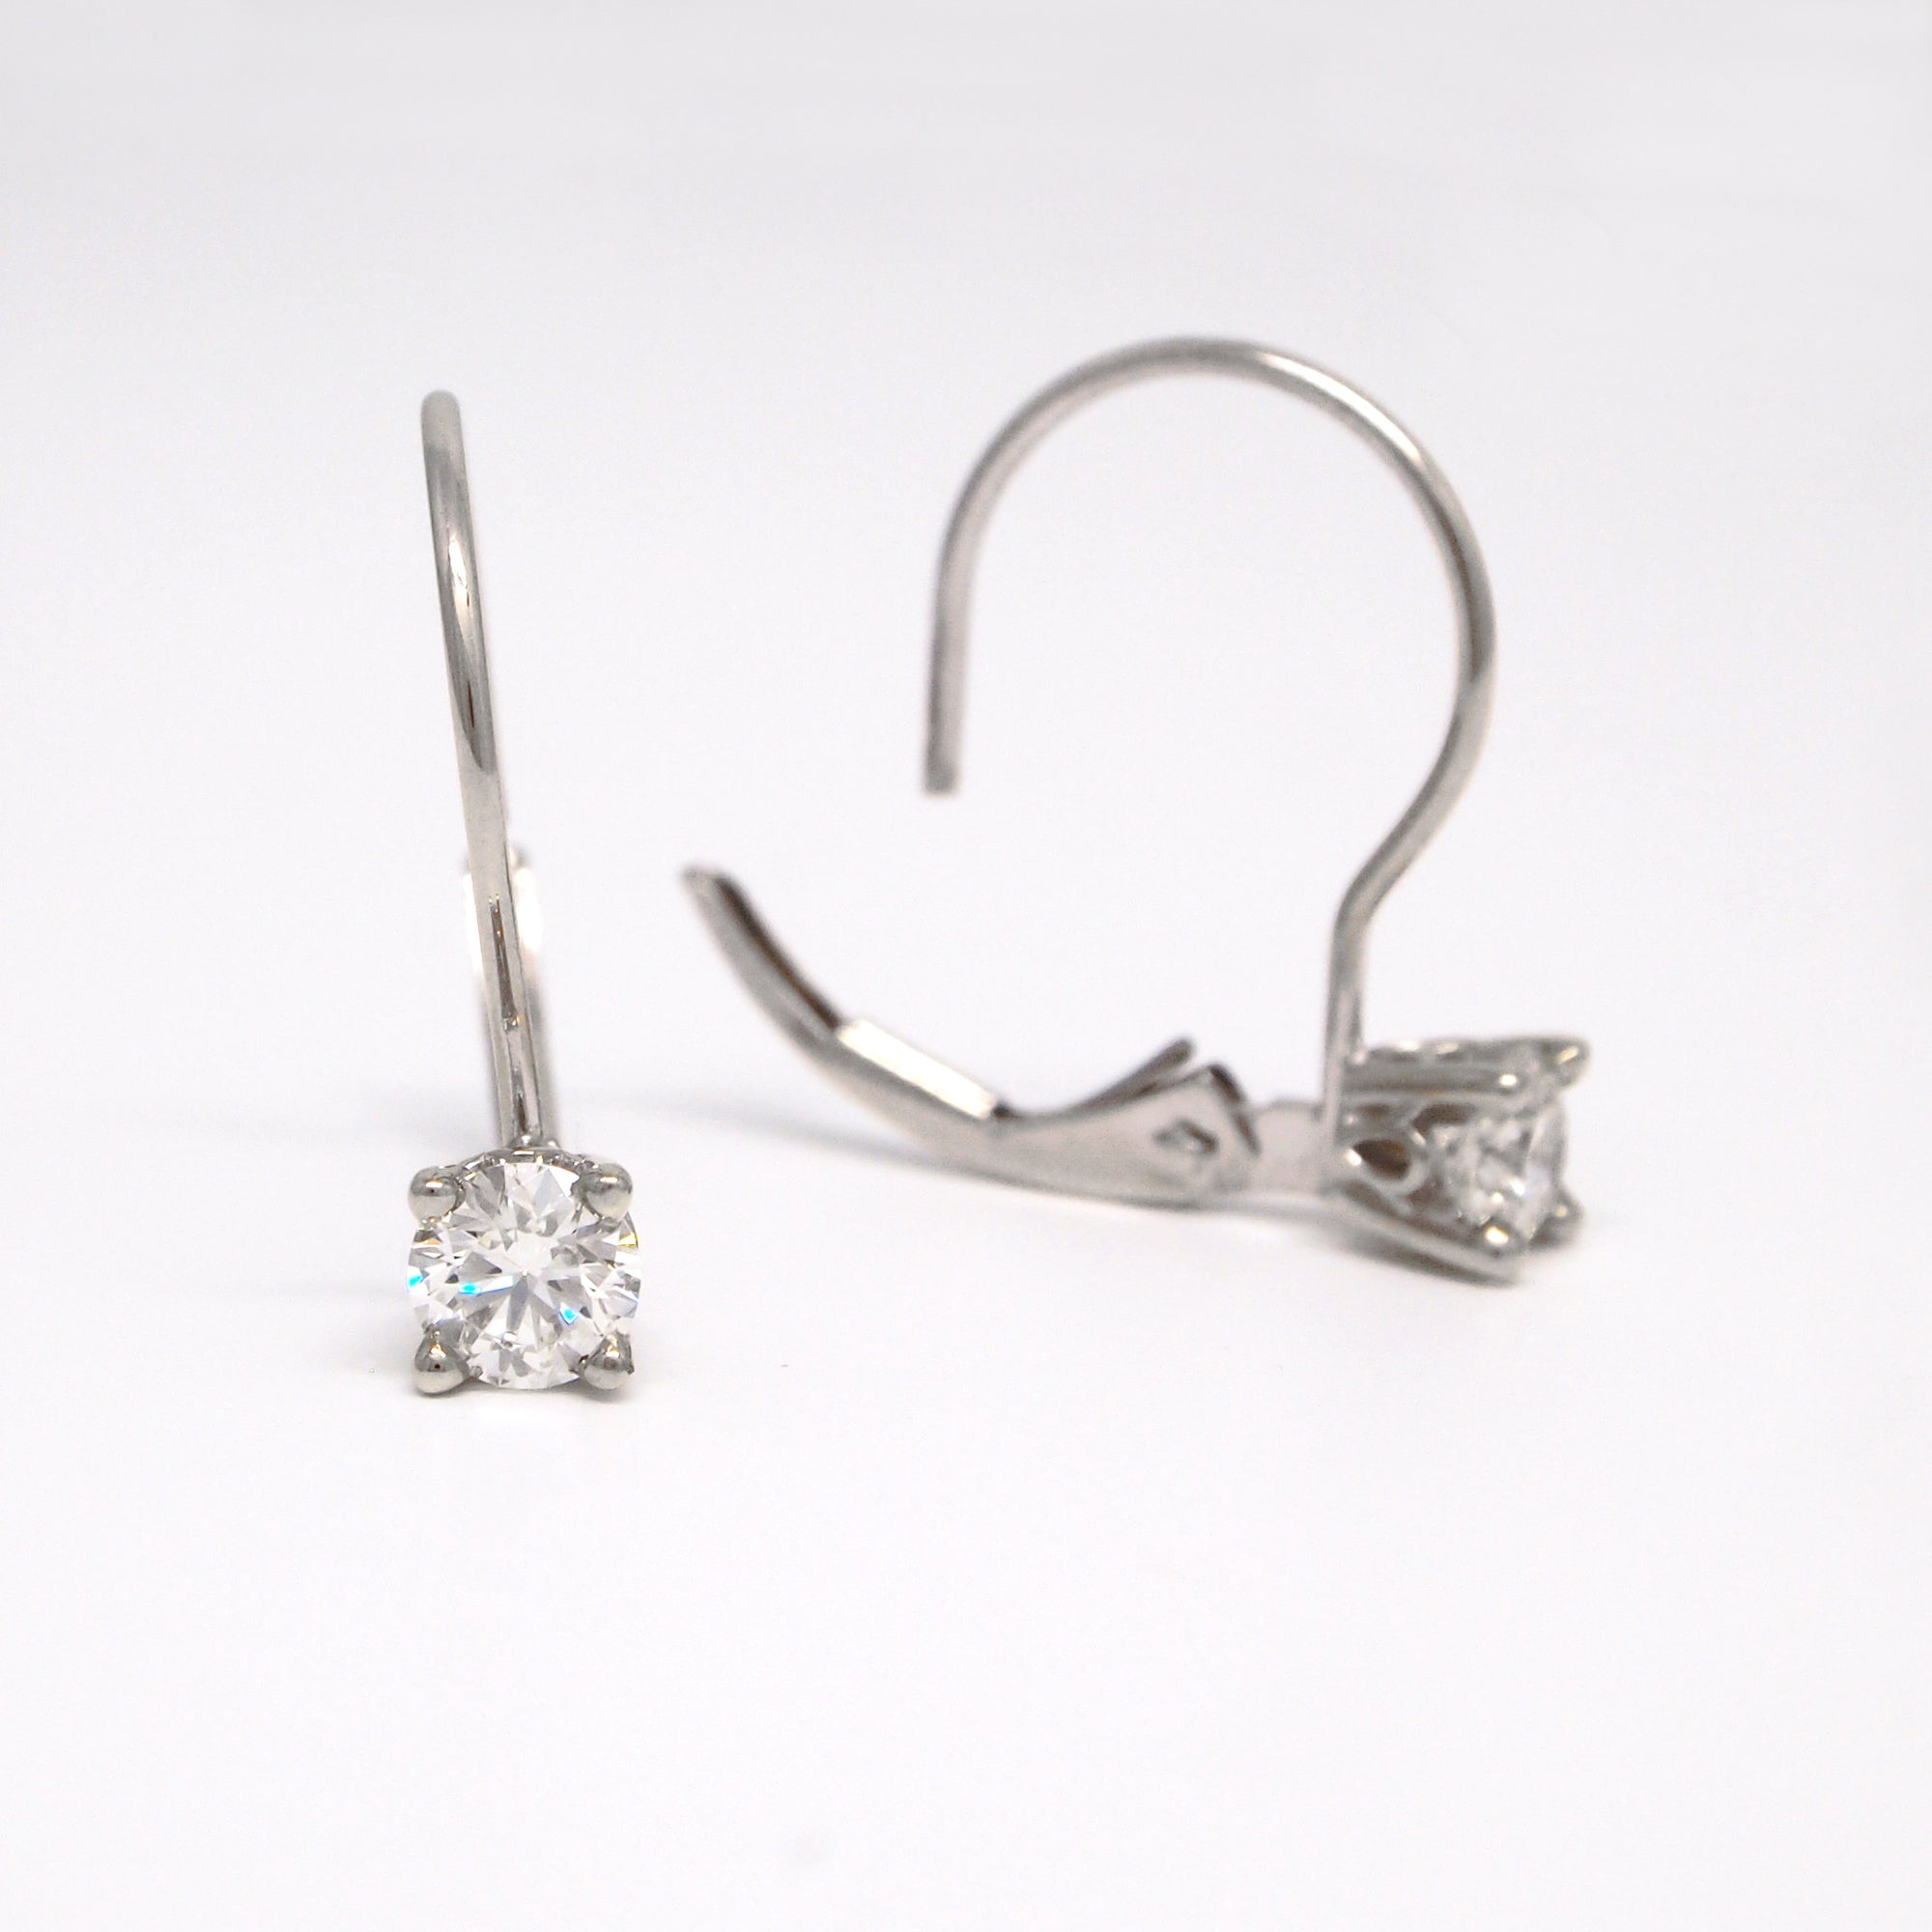 Lazare Kaplan 18K White Gold Round Diamond Earring Studs